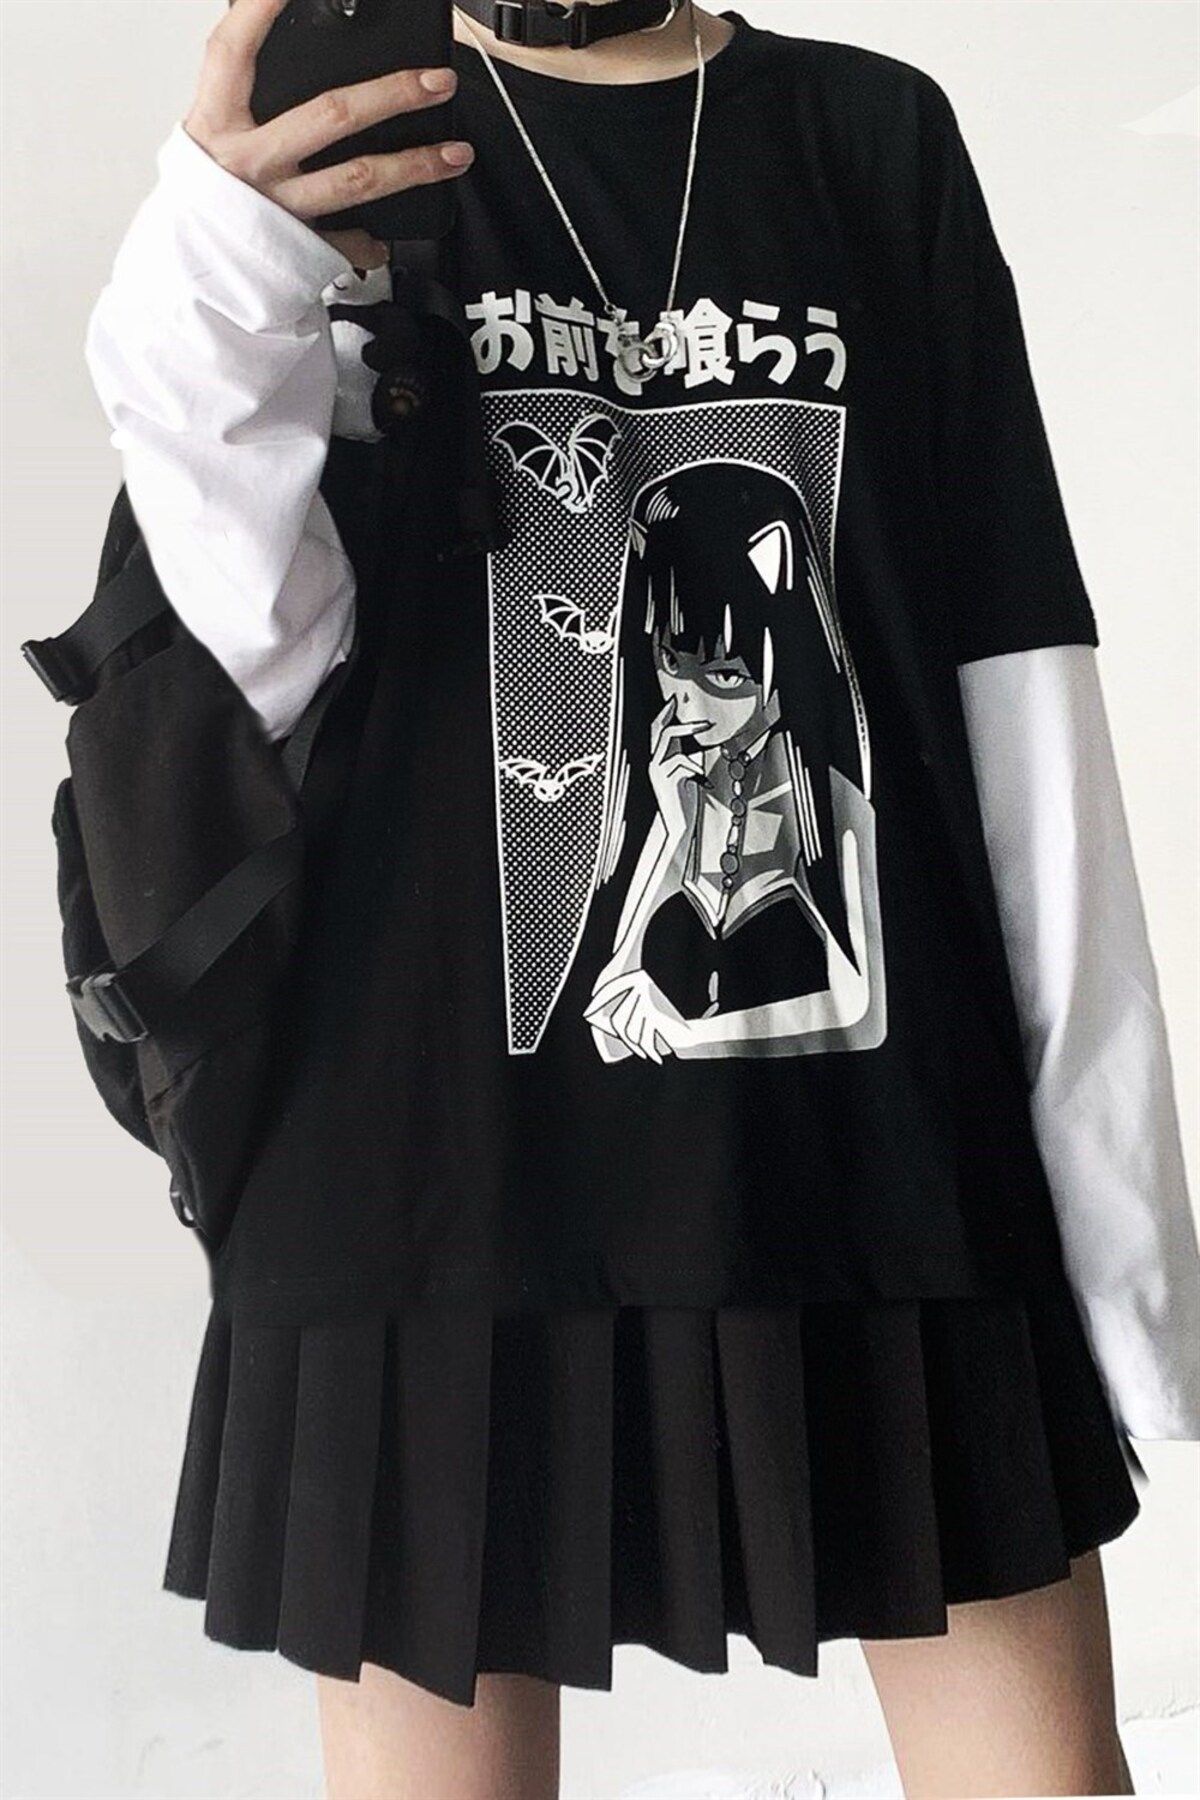 Carpe Beyaz Kol Eklemeli Anime Sweatshirt